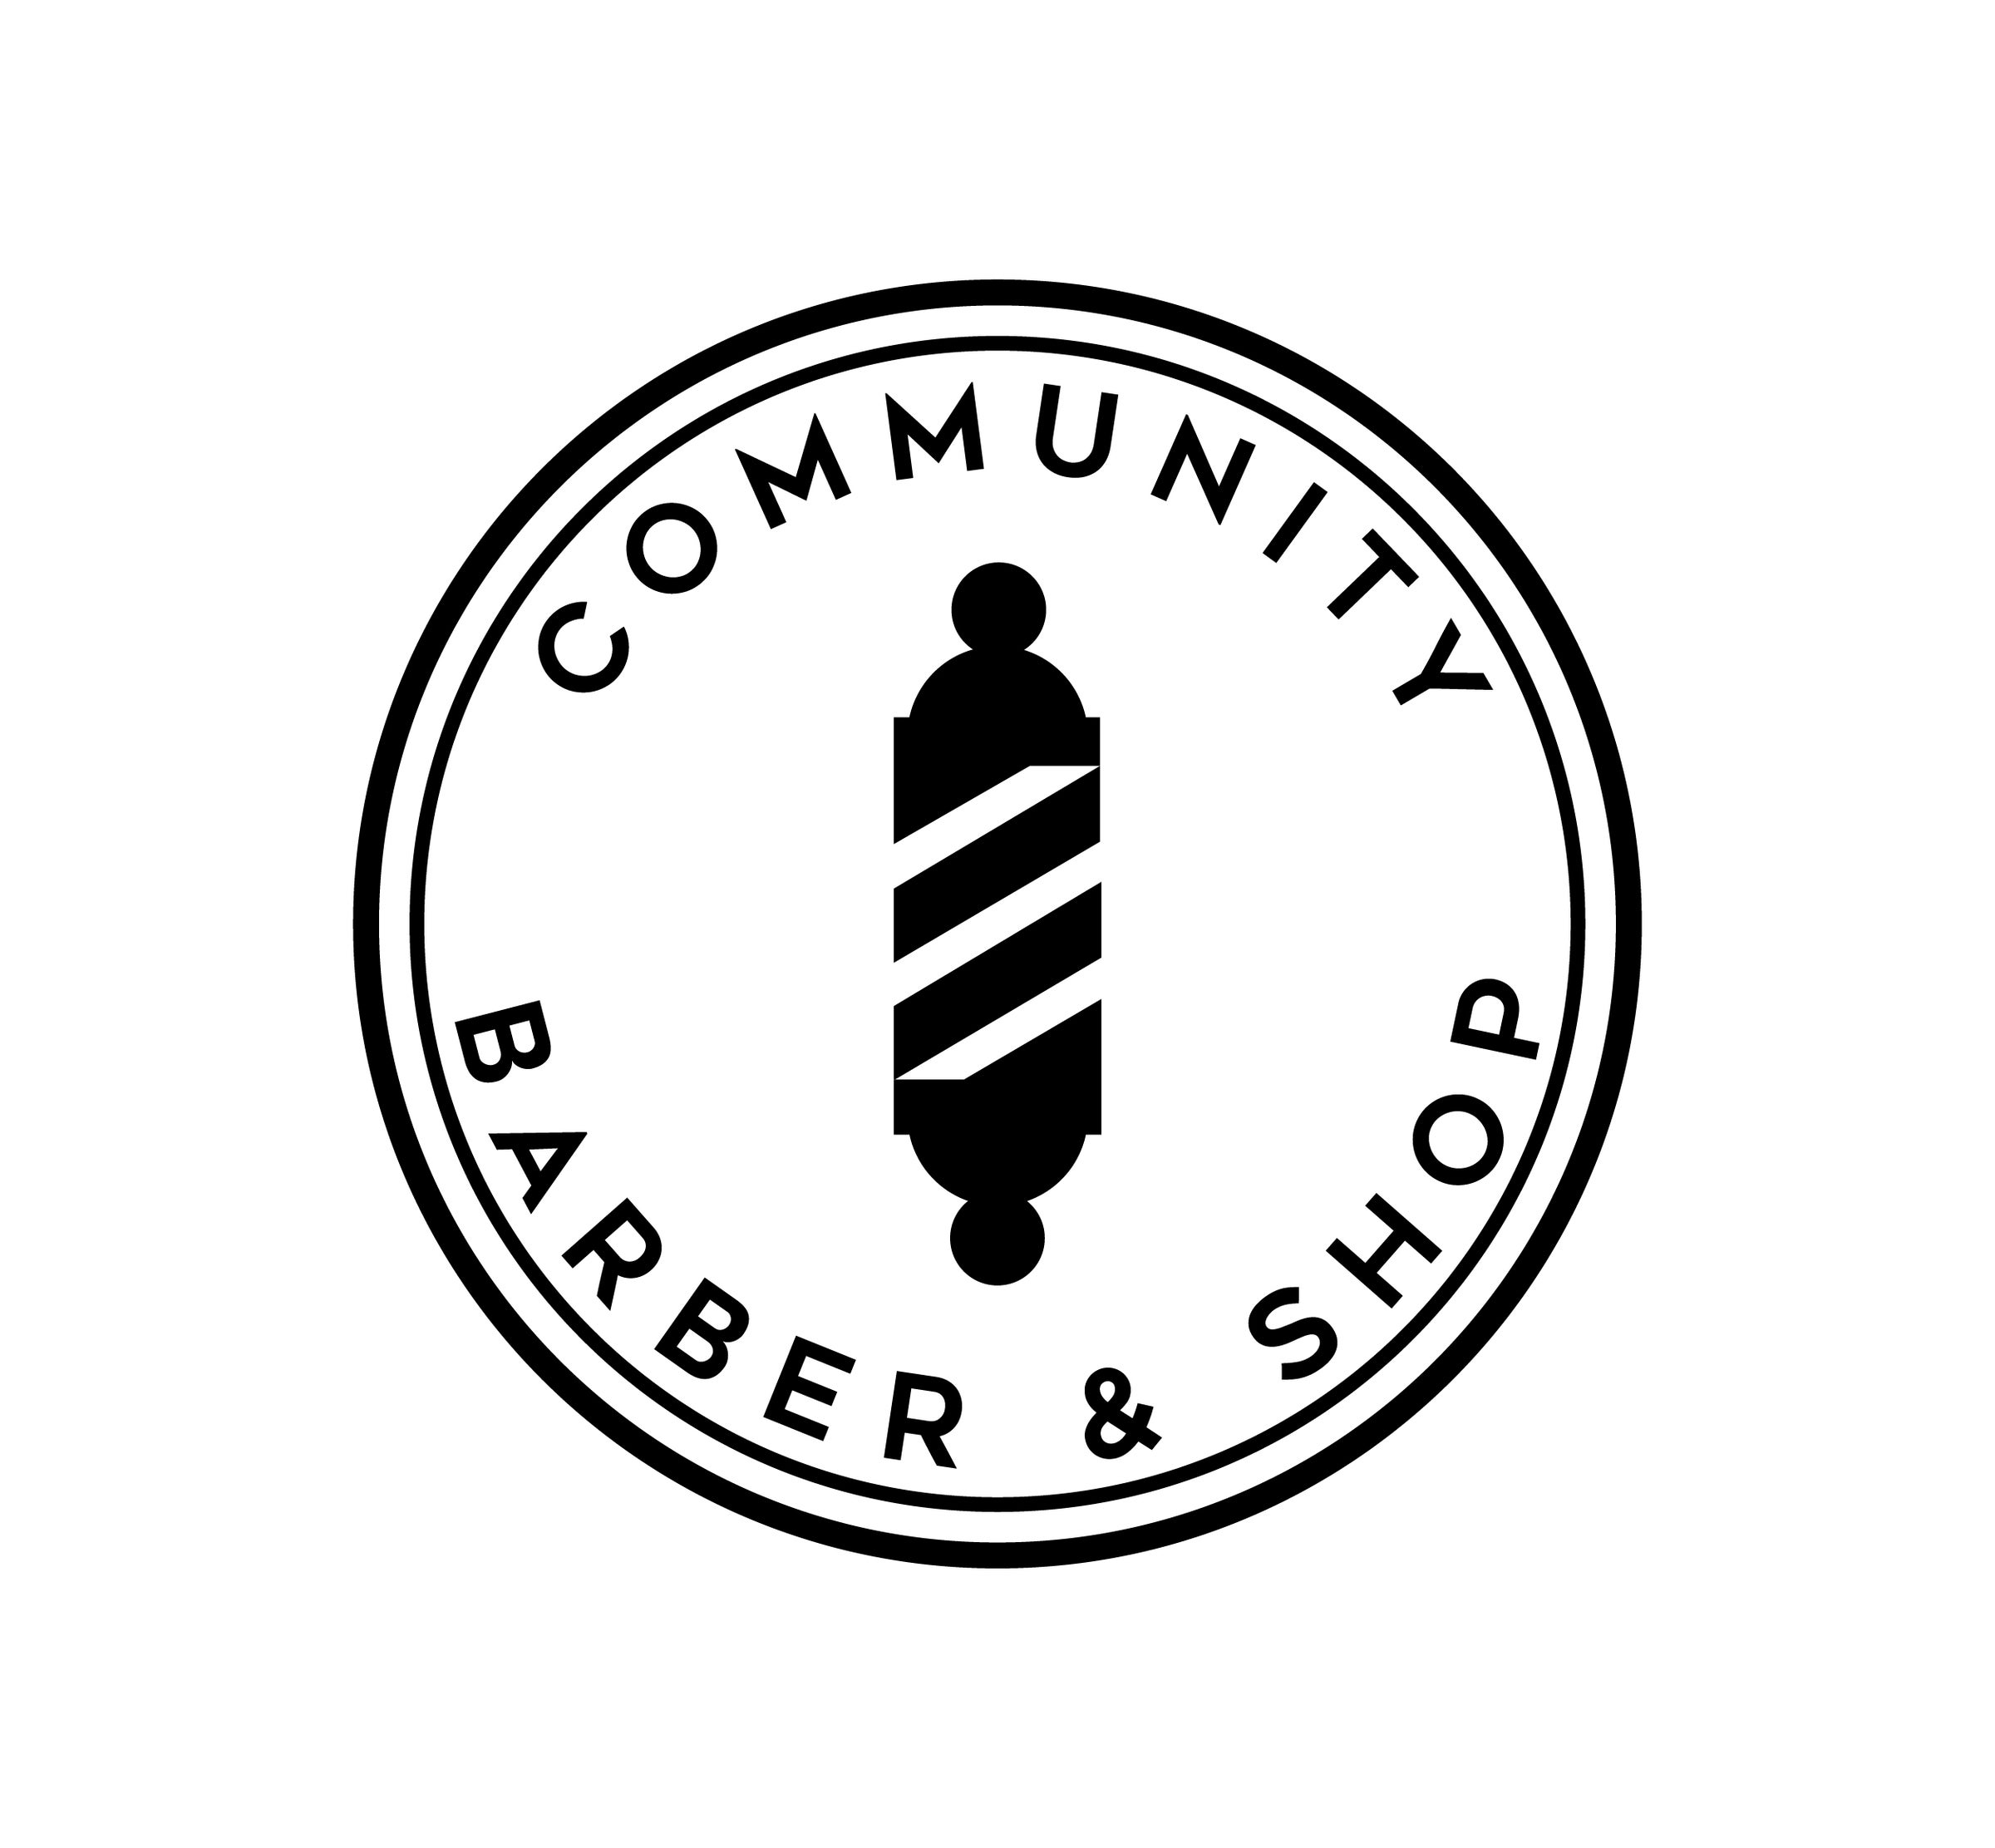 Contact Us - Classic Barber Shop